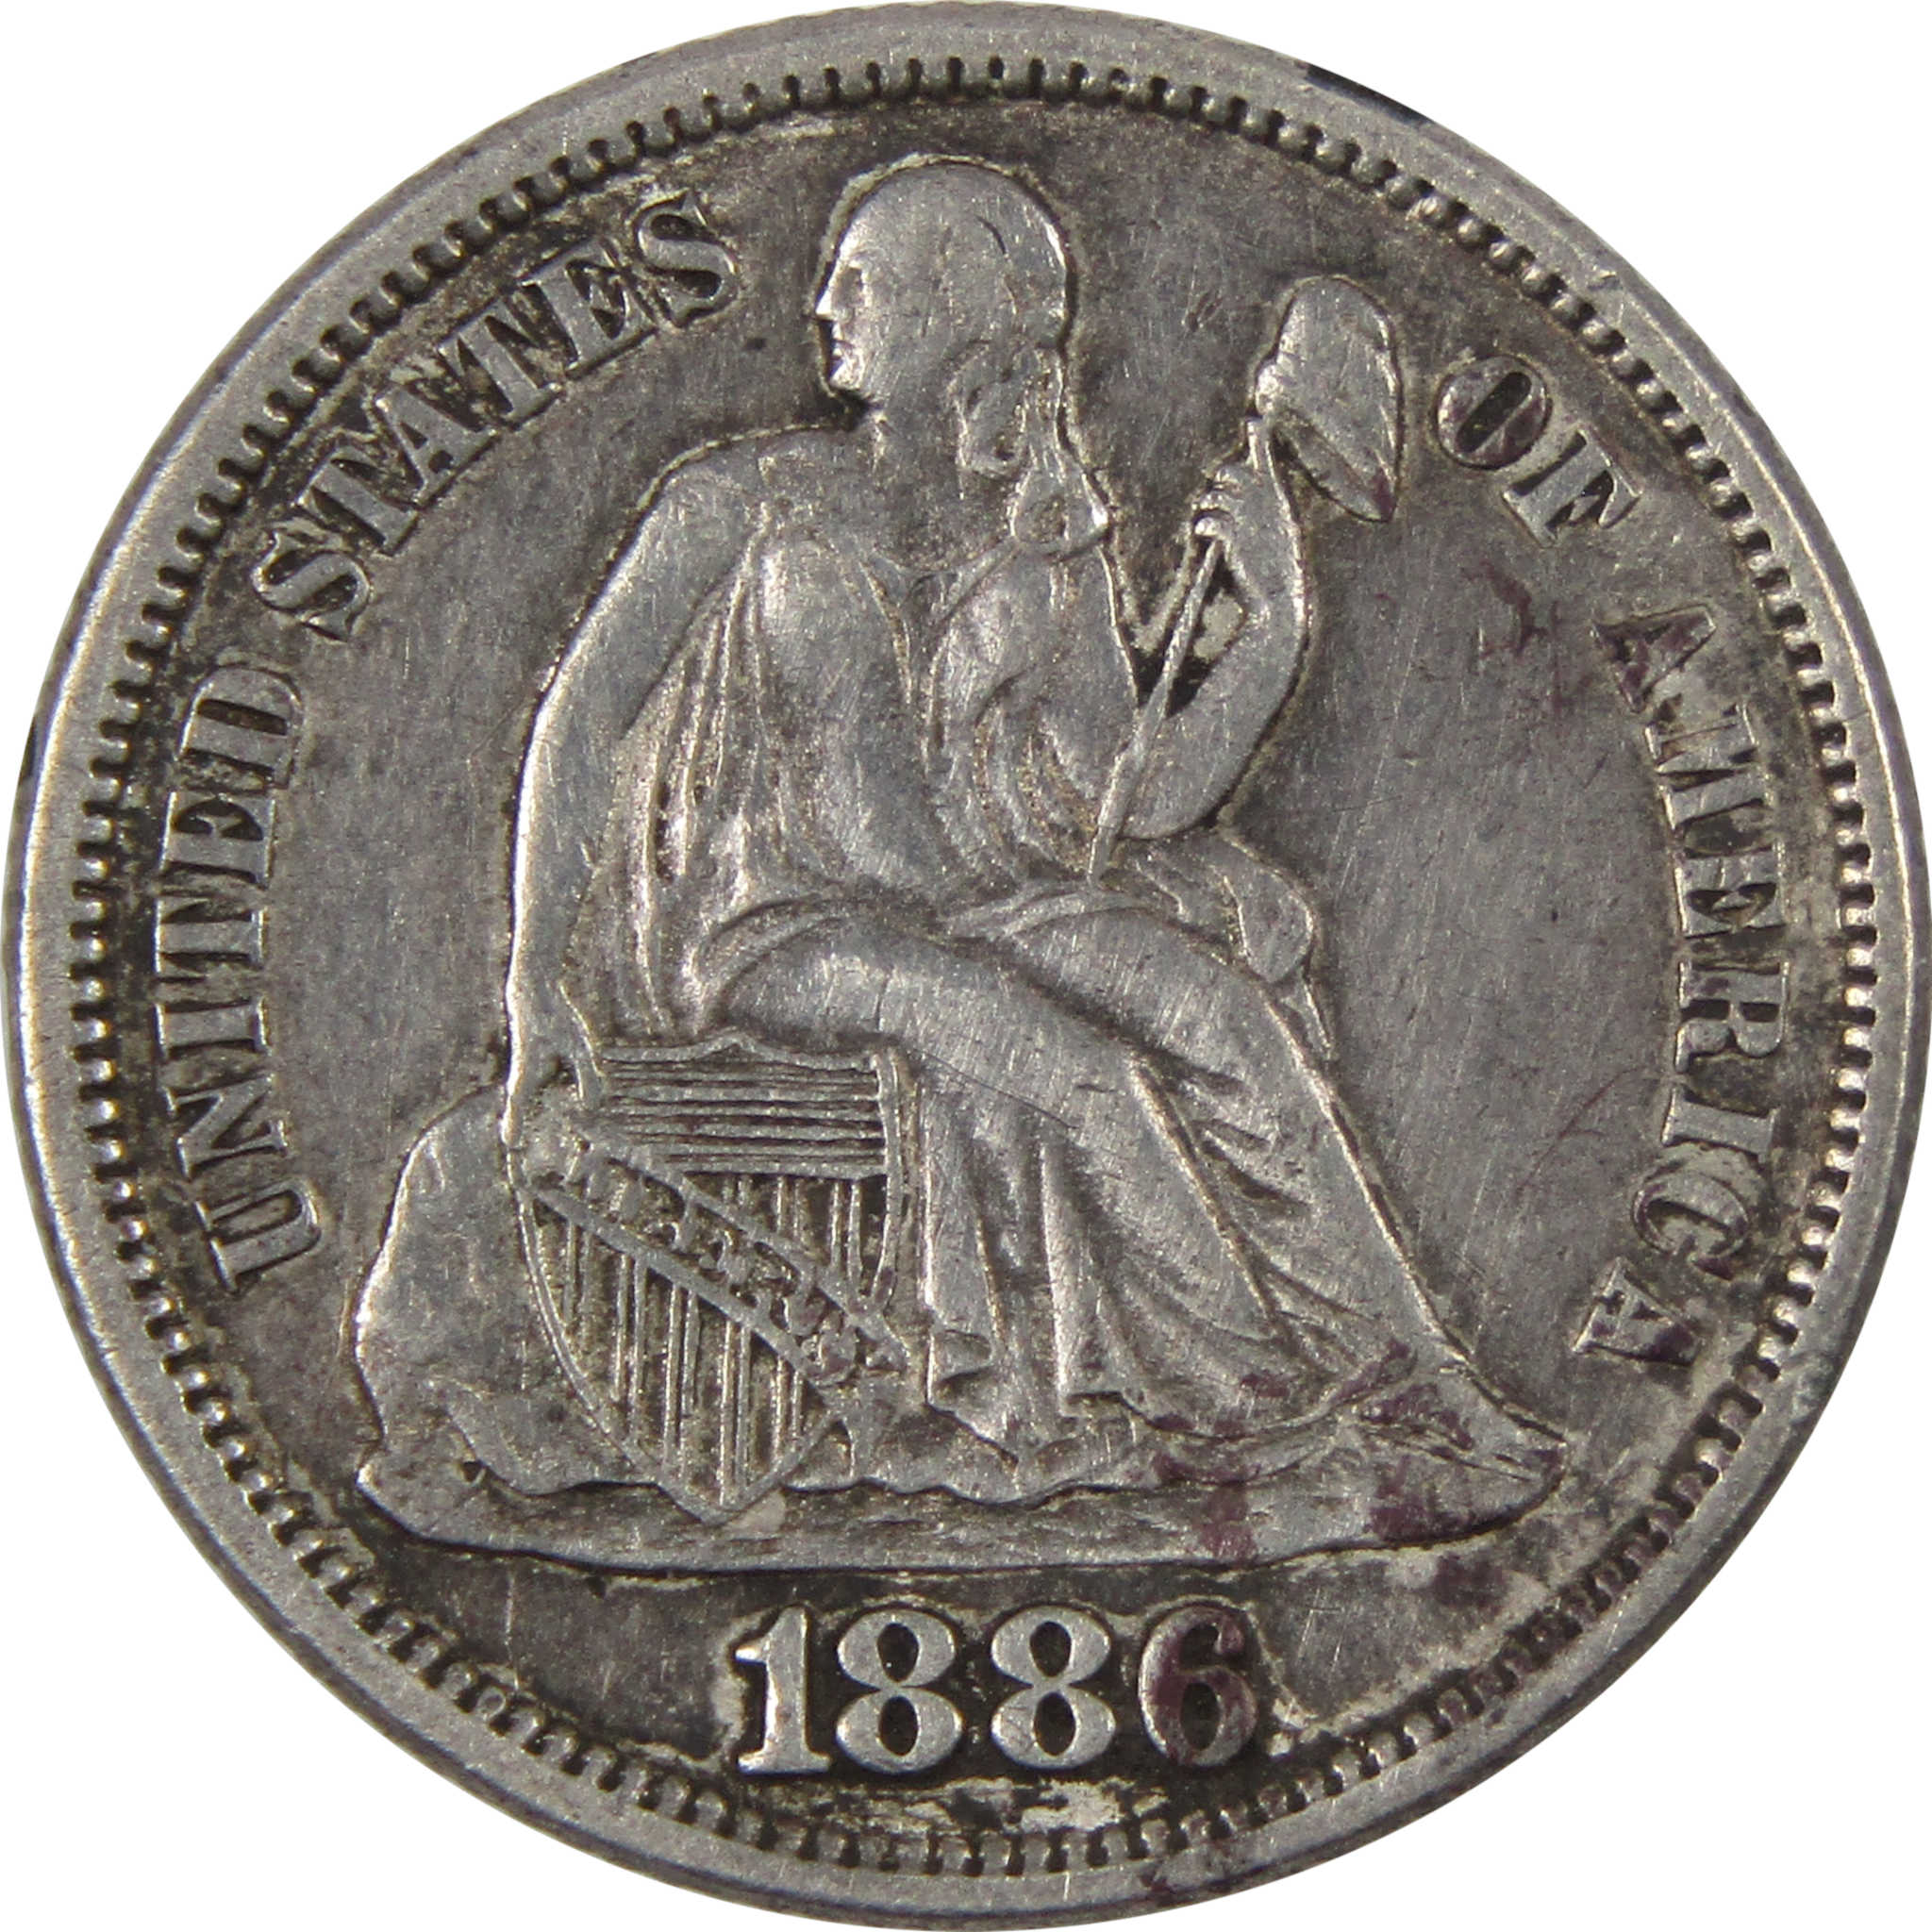 1886 Seated Liberty Dime Love Token 90% Silver 10c Coin SKU:IPC826